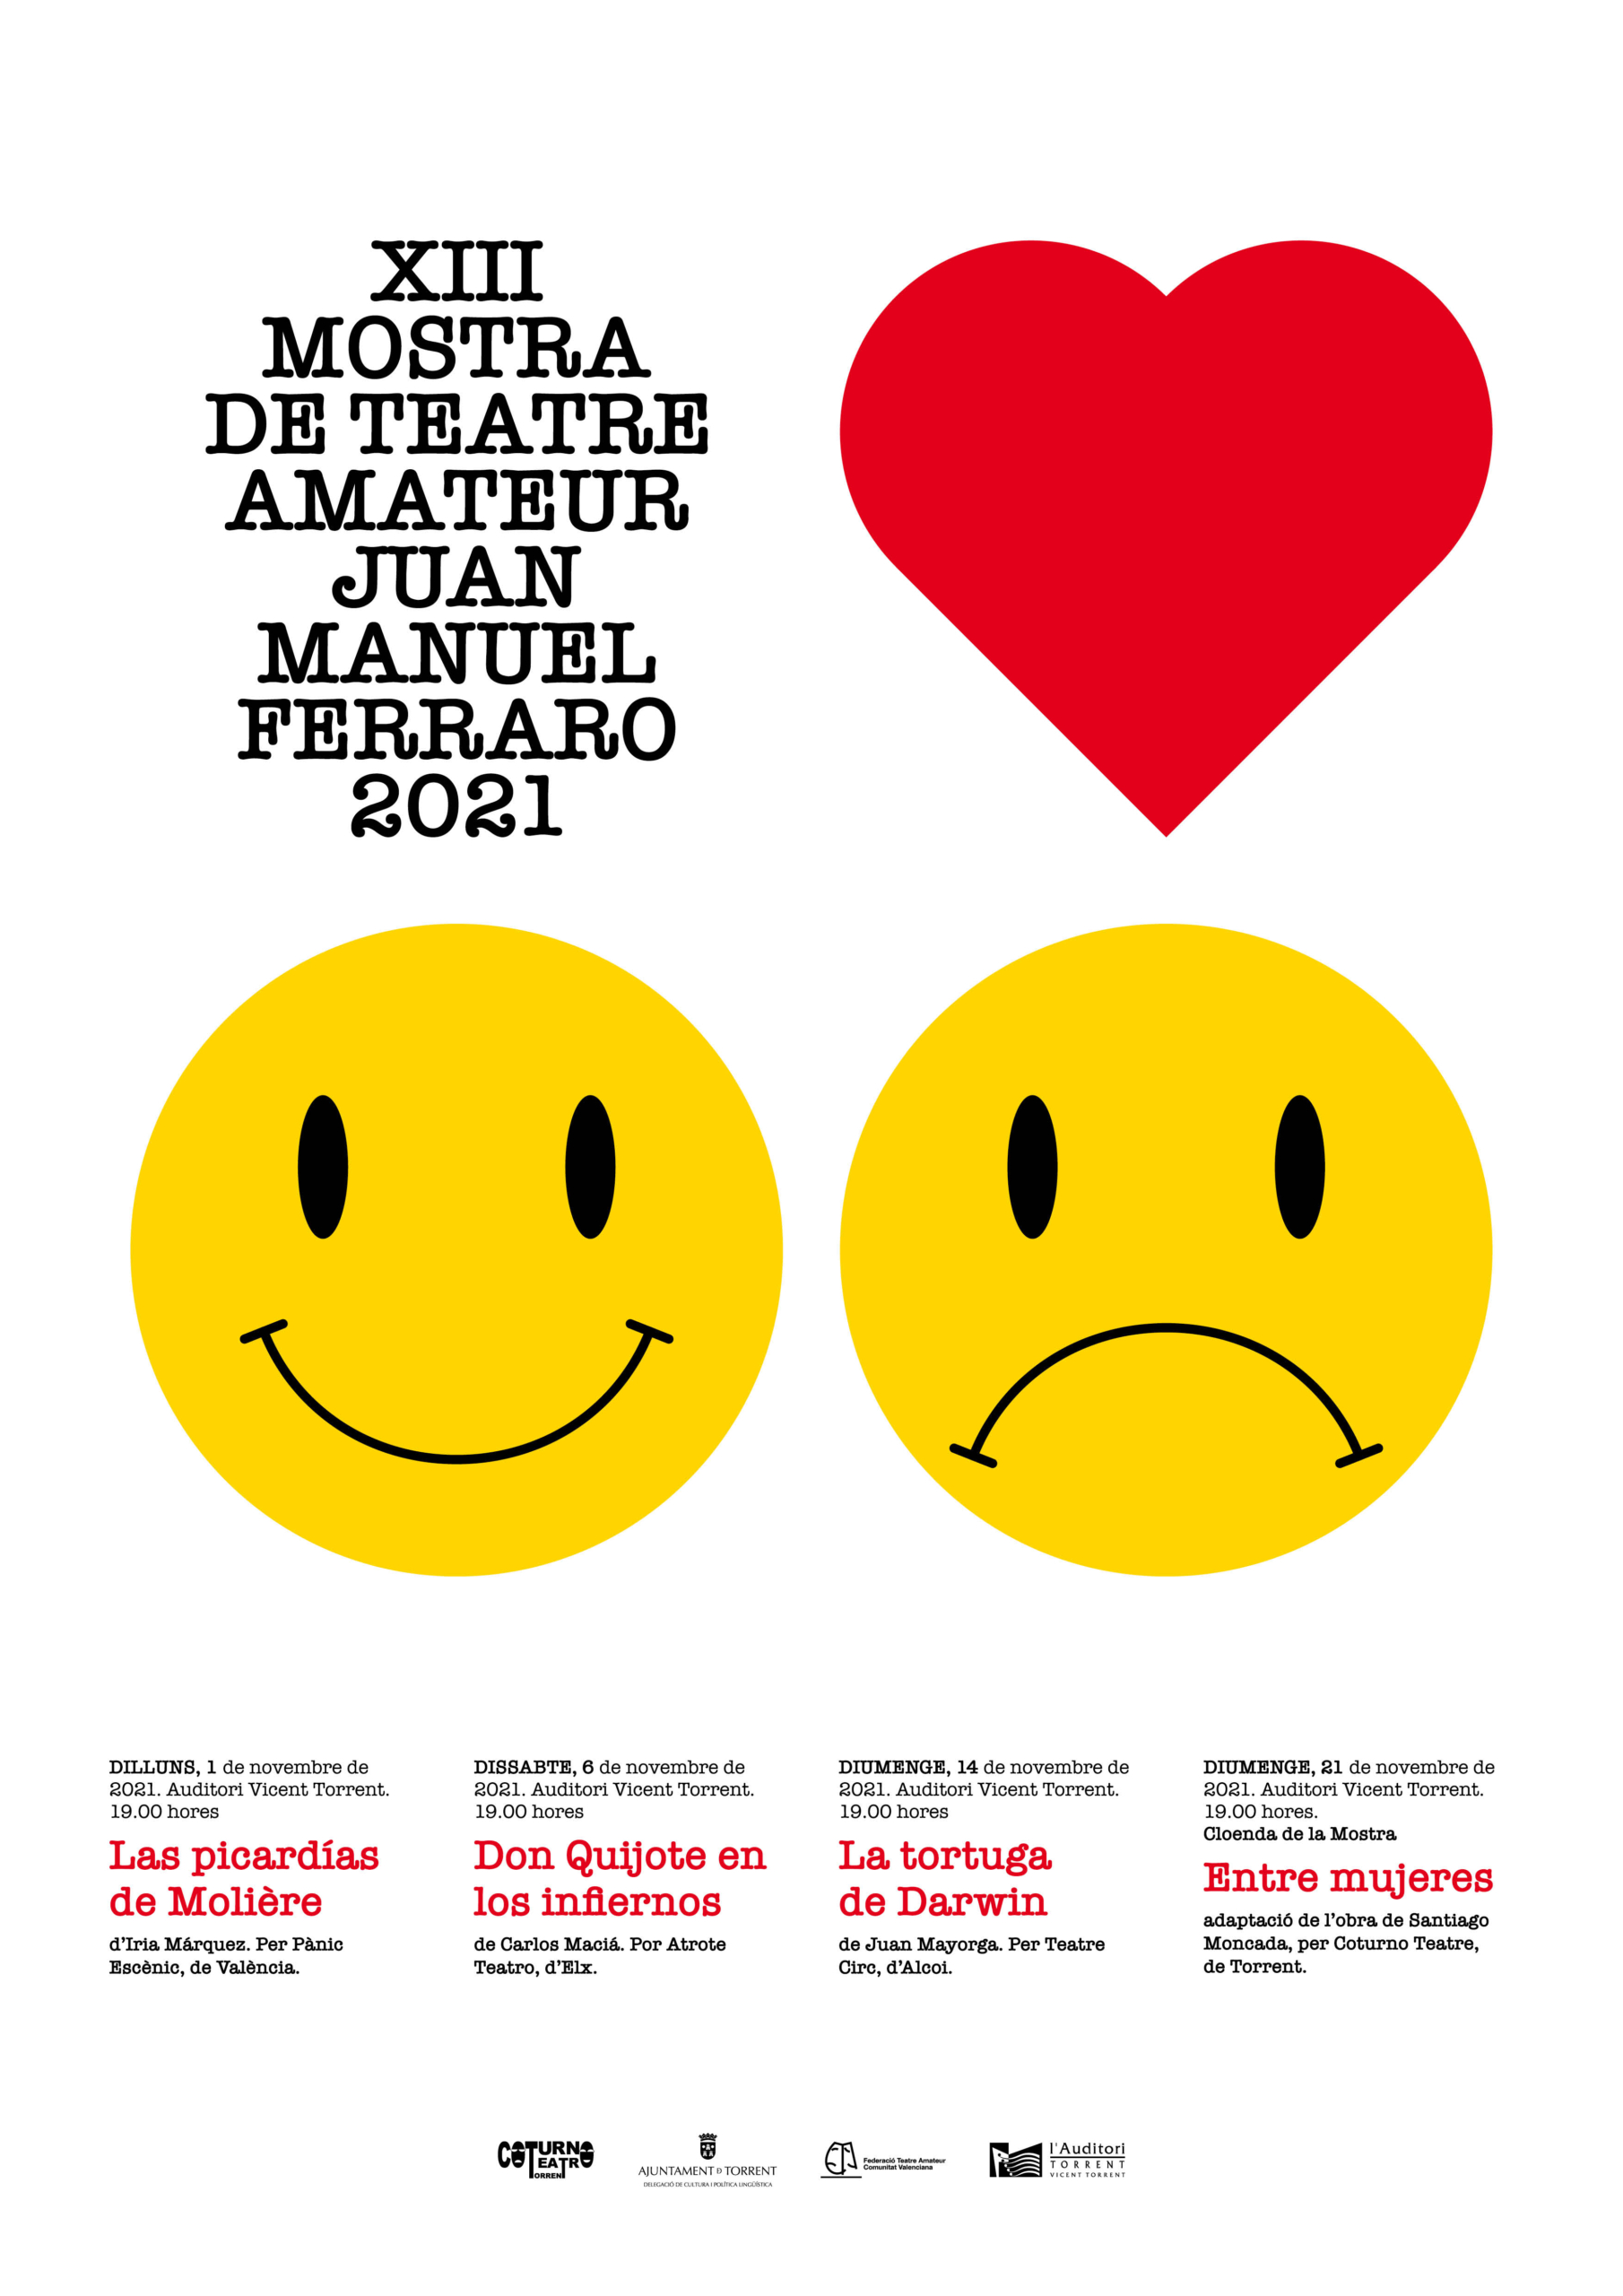 La Mostra de Teatre Amateur  “Juan Manuel Ferraro” celebra la  XIII Edición en l’Auditori de Torrent